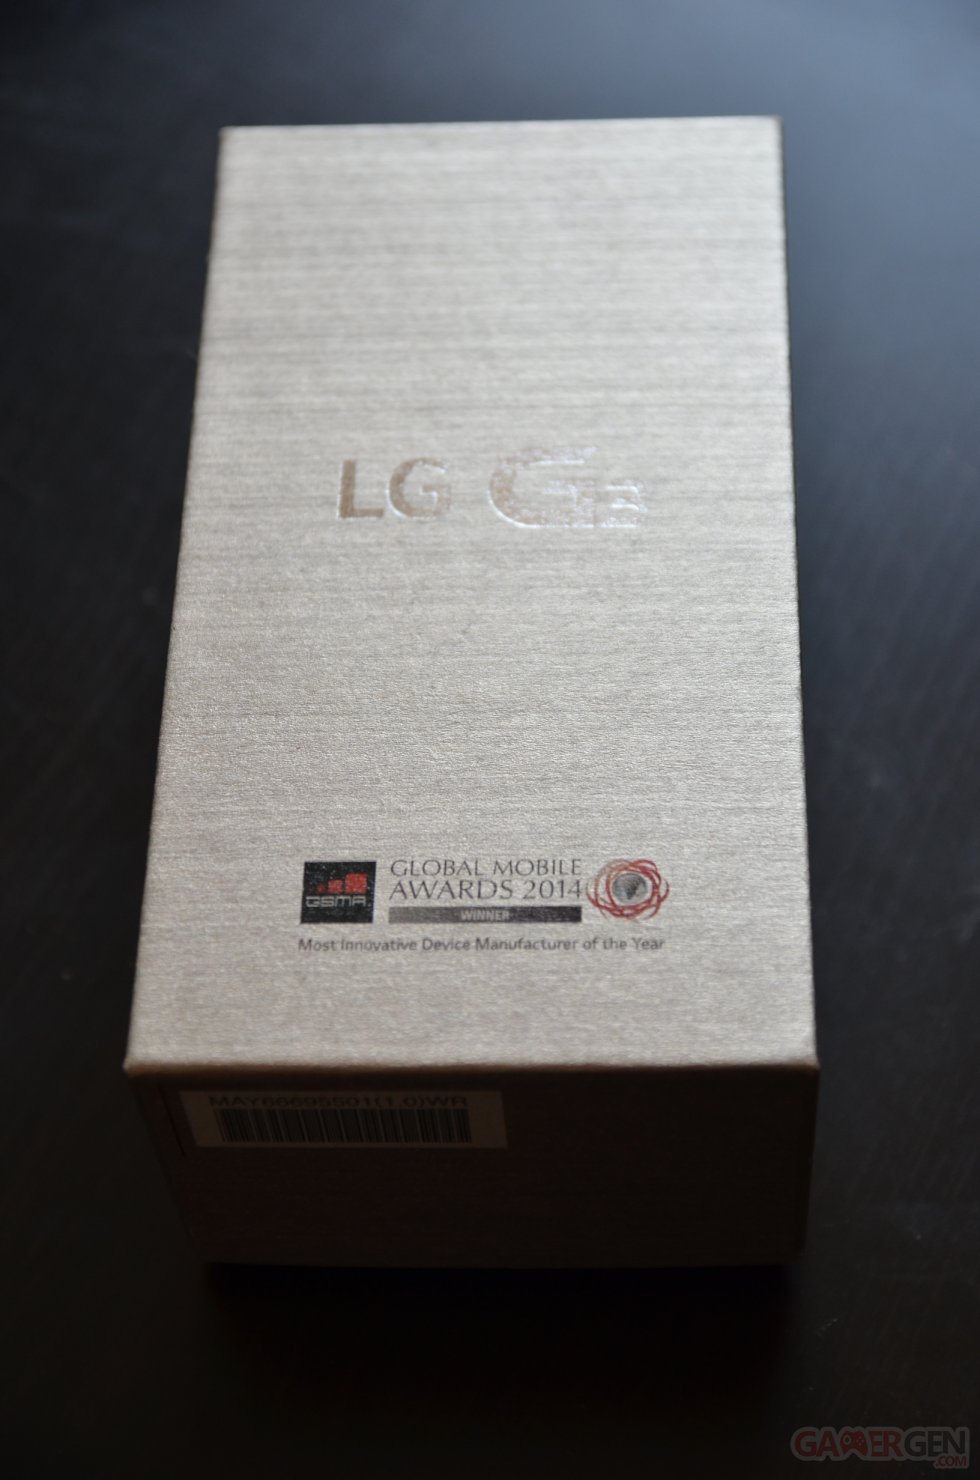 lg-g3-photos-gamergen (4)